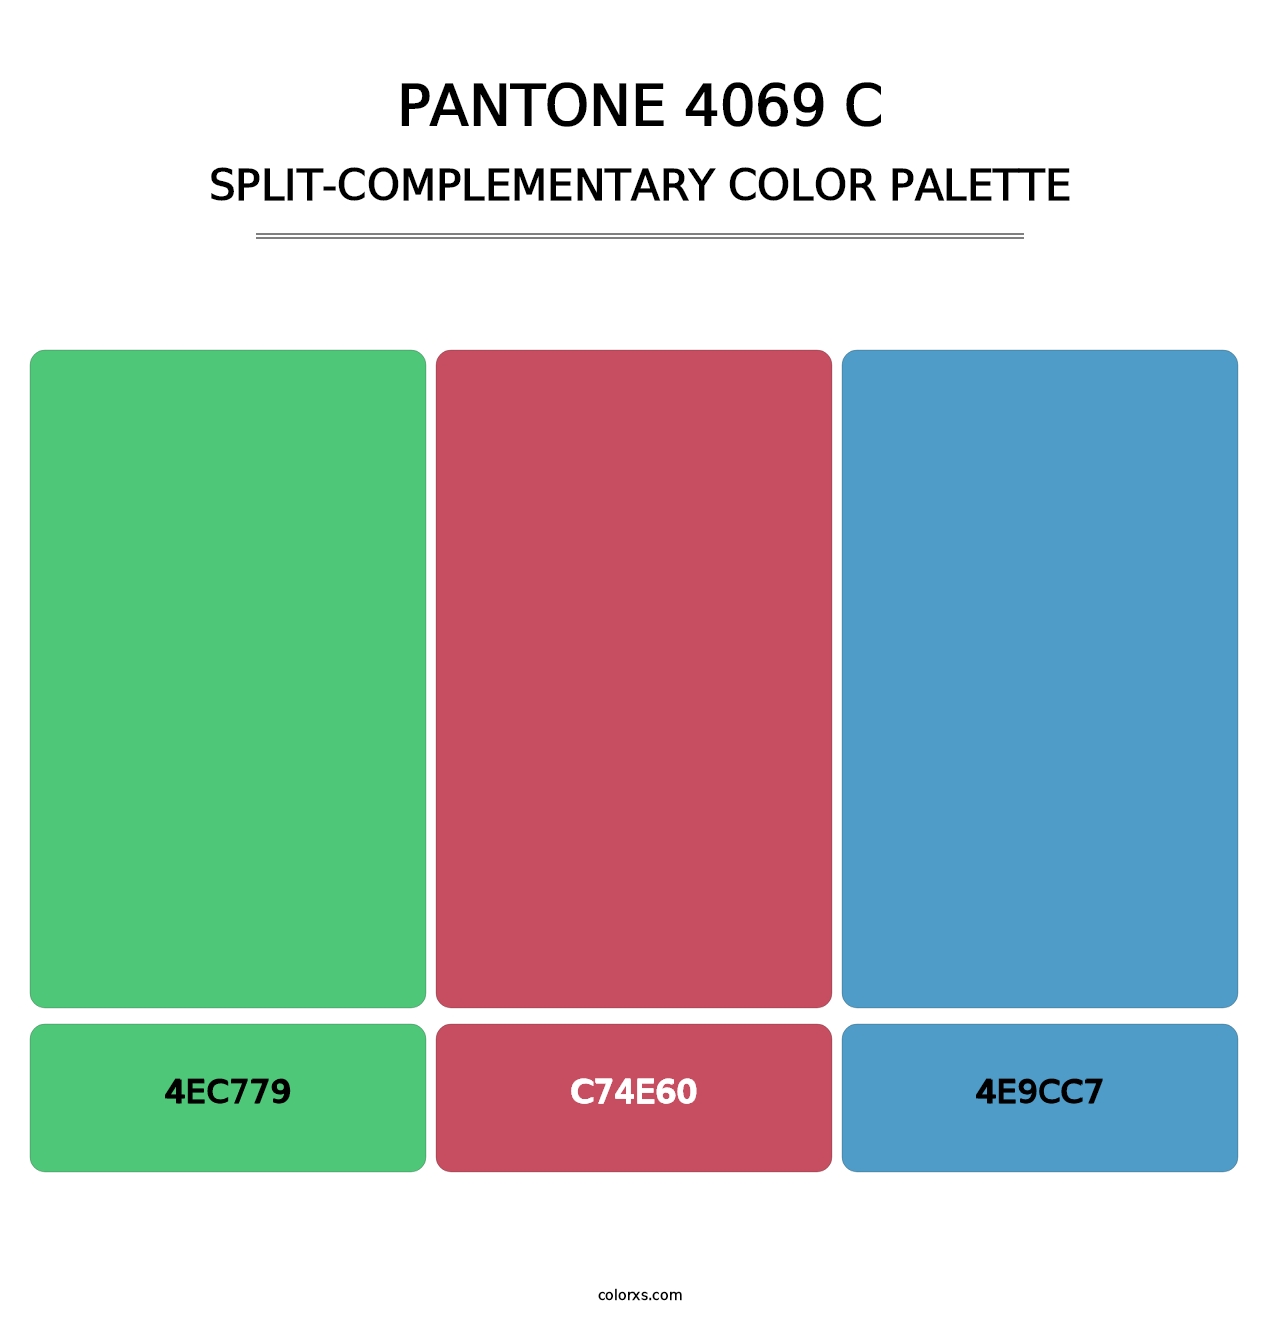 PANTONE 4069 C - Split-Complementary Color Palette